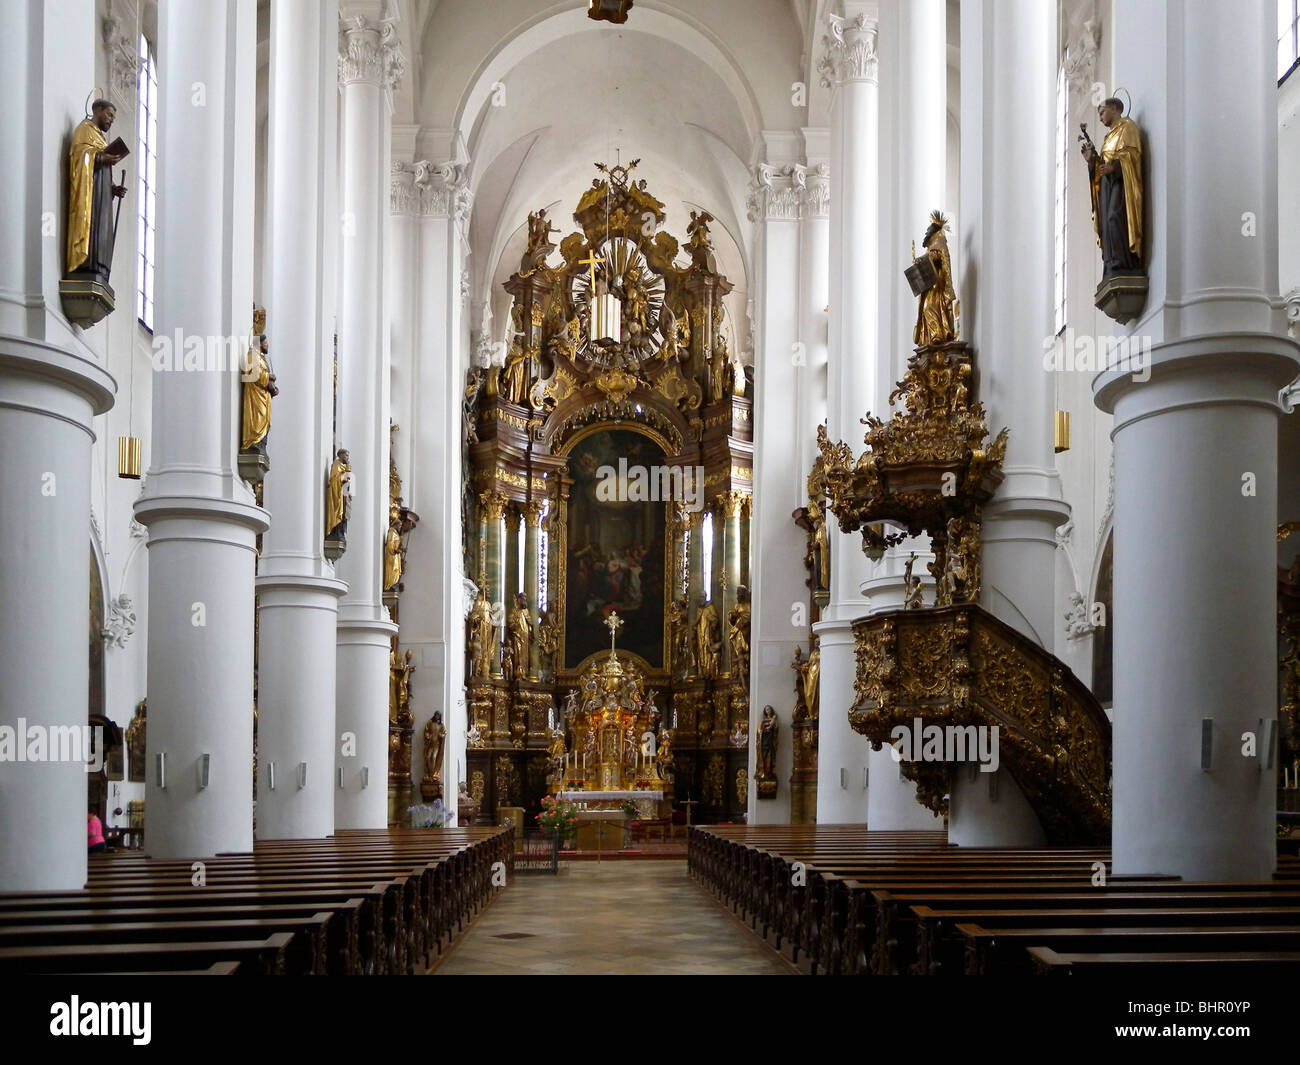 Inneres der Karmeliterkirche, Straubing, Bayern, Deutschland | interior of Karmeliterkirche, Straubing, Bavaria, Germany Stock Photo